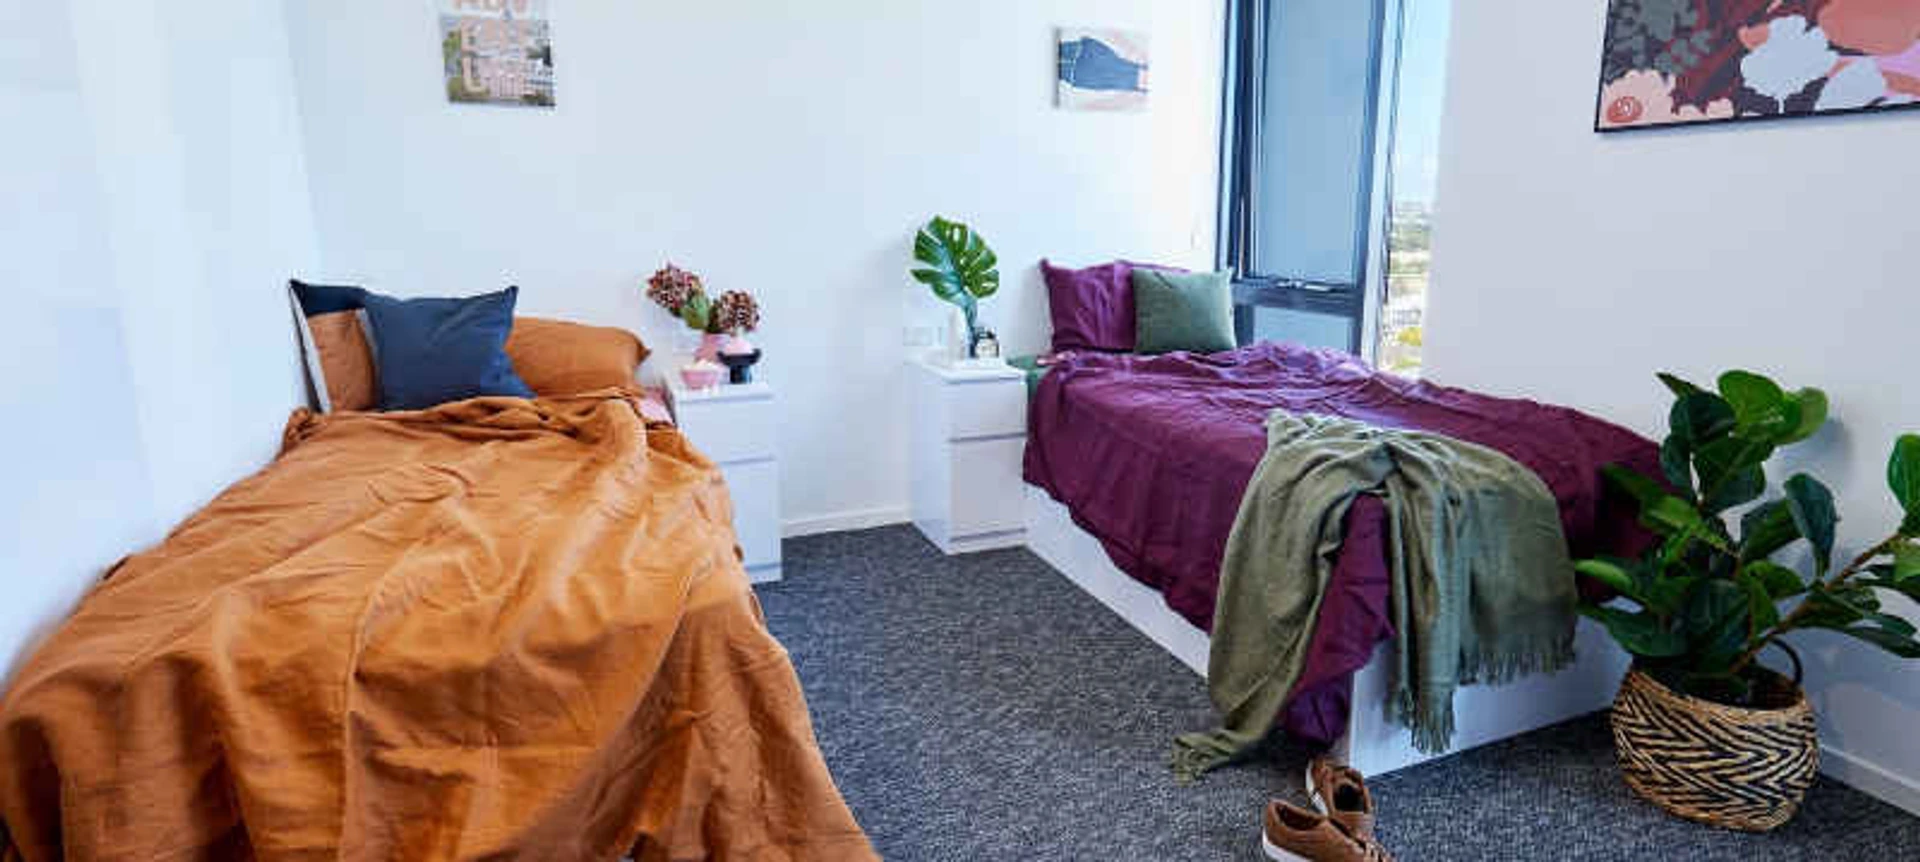 Gemeinsames Zimmer mit einem anderen Studierenden in Sydney